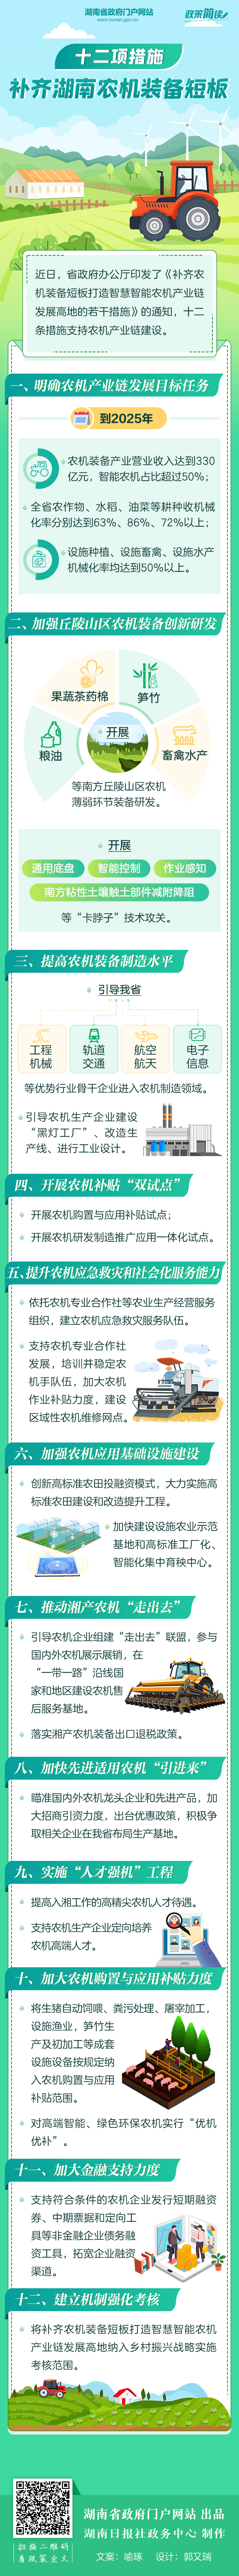 政策简读丨十二项措施 补齐湖南农机装备短板